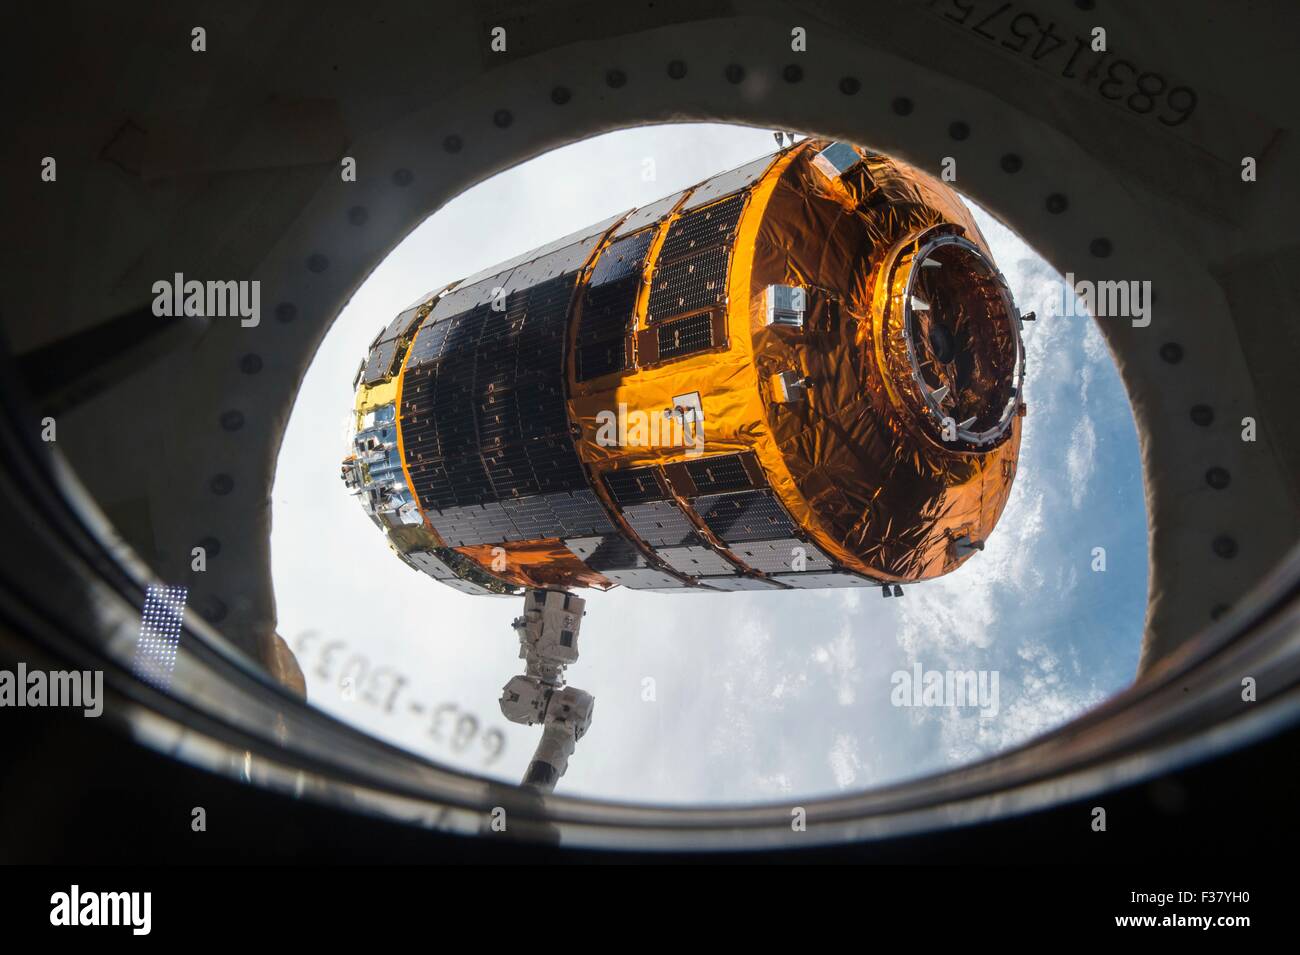 El Canadarm 2 libera la Agencia de Exploración Aeroespacial de Japón Kounotori 5 vehículo de transferencia H-II como la nave espacial de carga se aleja de la Estación Espacial Internacional el 29 de septiembre de 2015 en la órbita de la tierra. La nave de carga automatizado, denominado Kounotori o cigüeña blanca, fue amarrado al laboratorio orbital durante cinco semanas y entregado casi cinco toneladas de equipo y suministros. Foto de stock